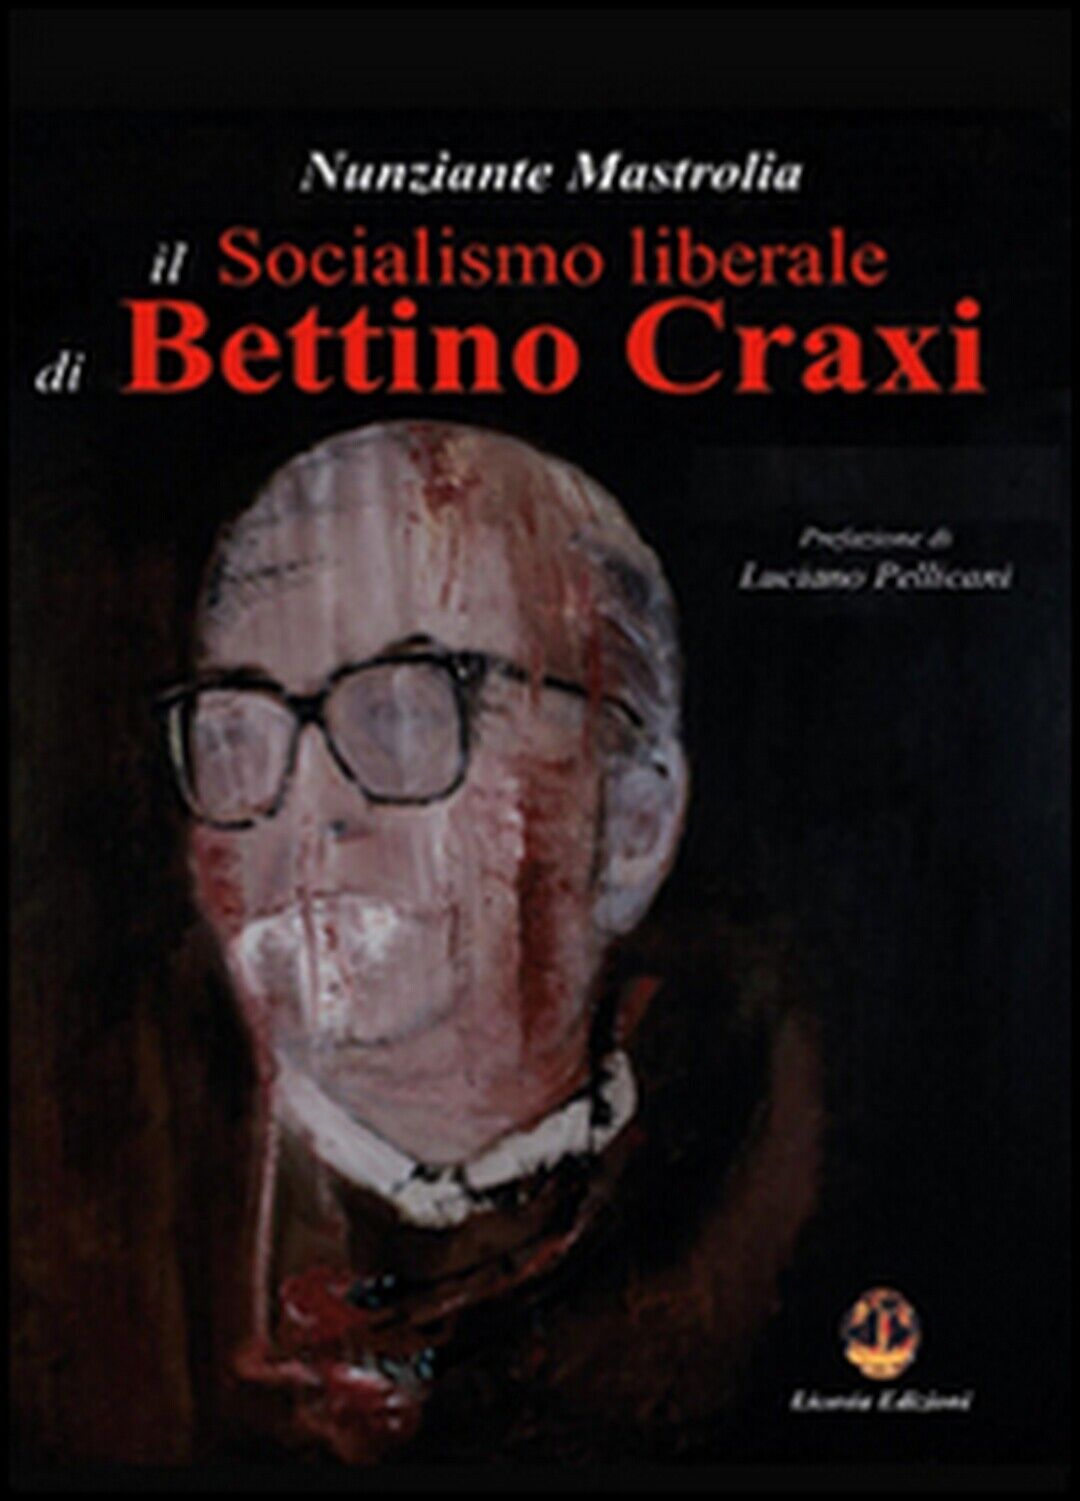 Il socialismo liberale di Bettino Craxi  - Nunziante Mastrolia